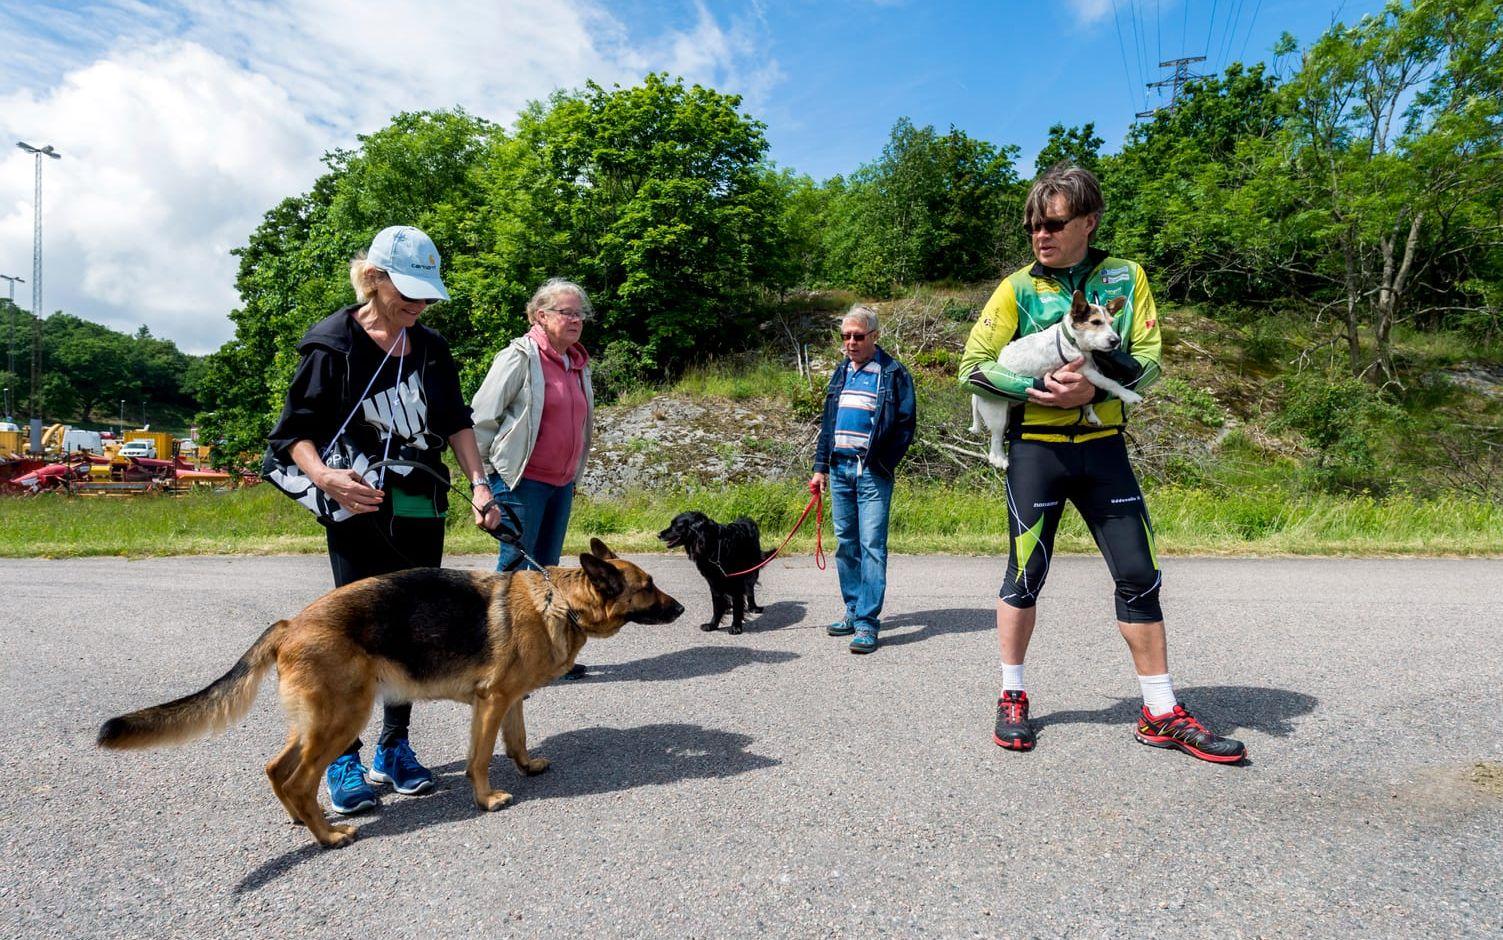 Invigning. F.v. Agneta Öster (med hunden Vinnies), Catarina och Ingvar Kåberg (med hunden Zäta) och Clas Öster med Leo i famnen.